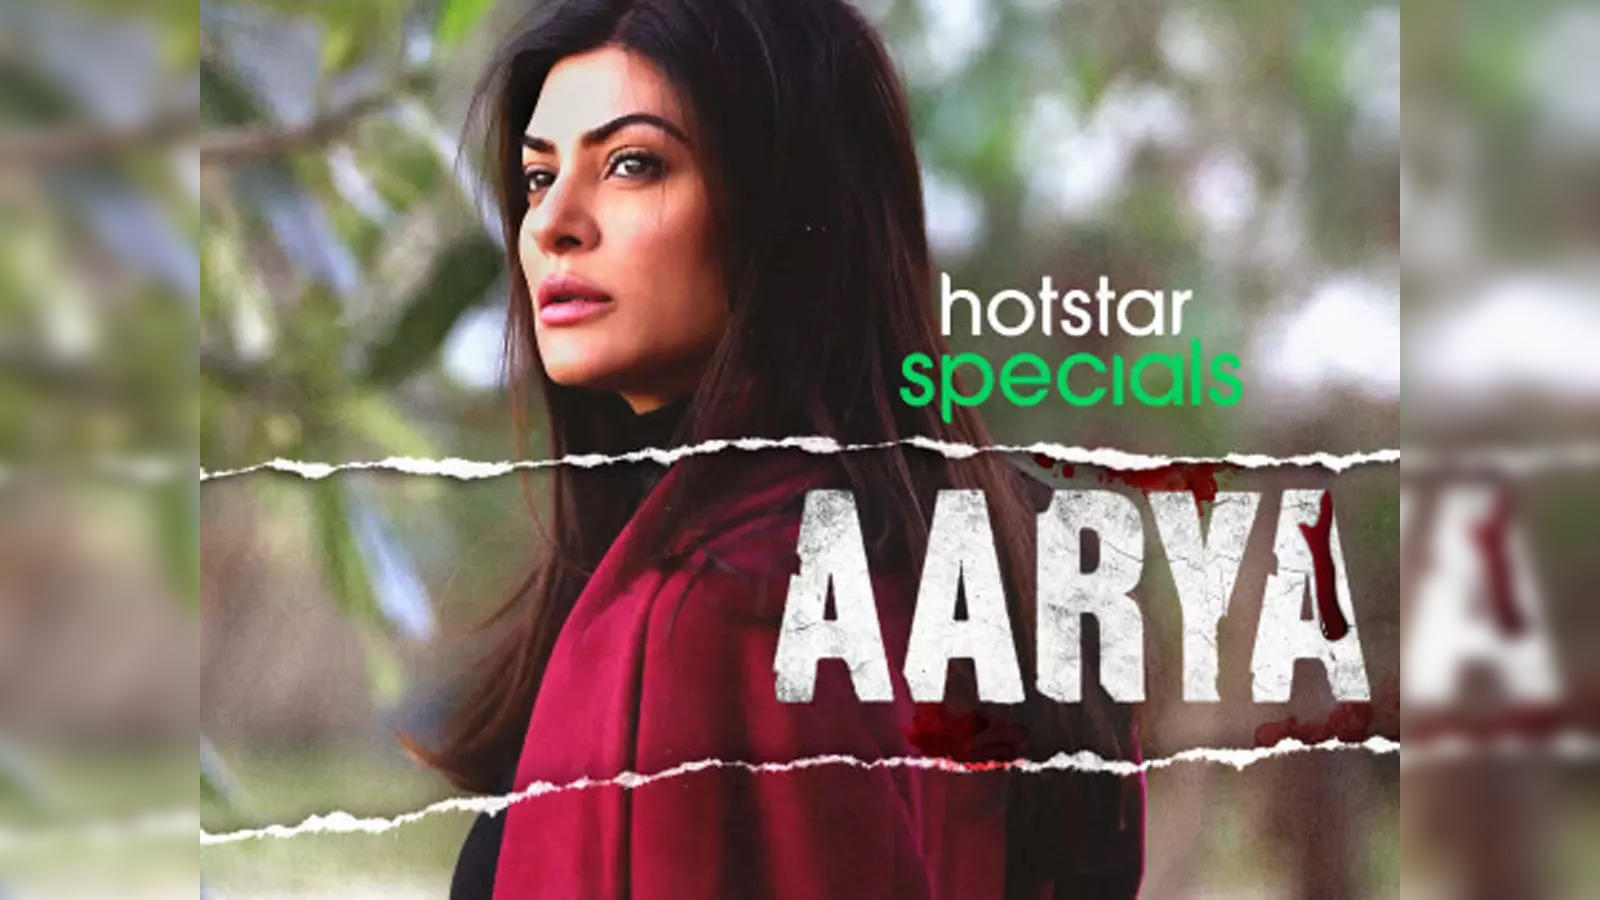 aarya season 2 will stream on disney hotstar from december 10